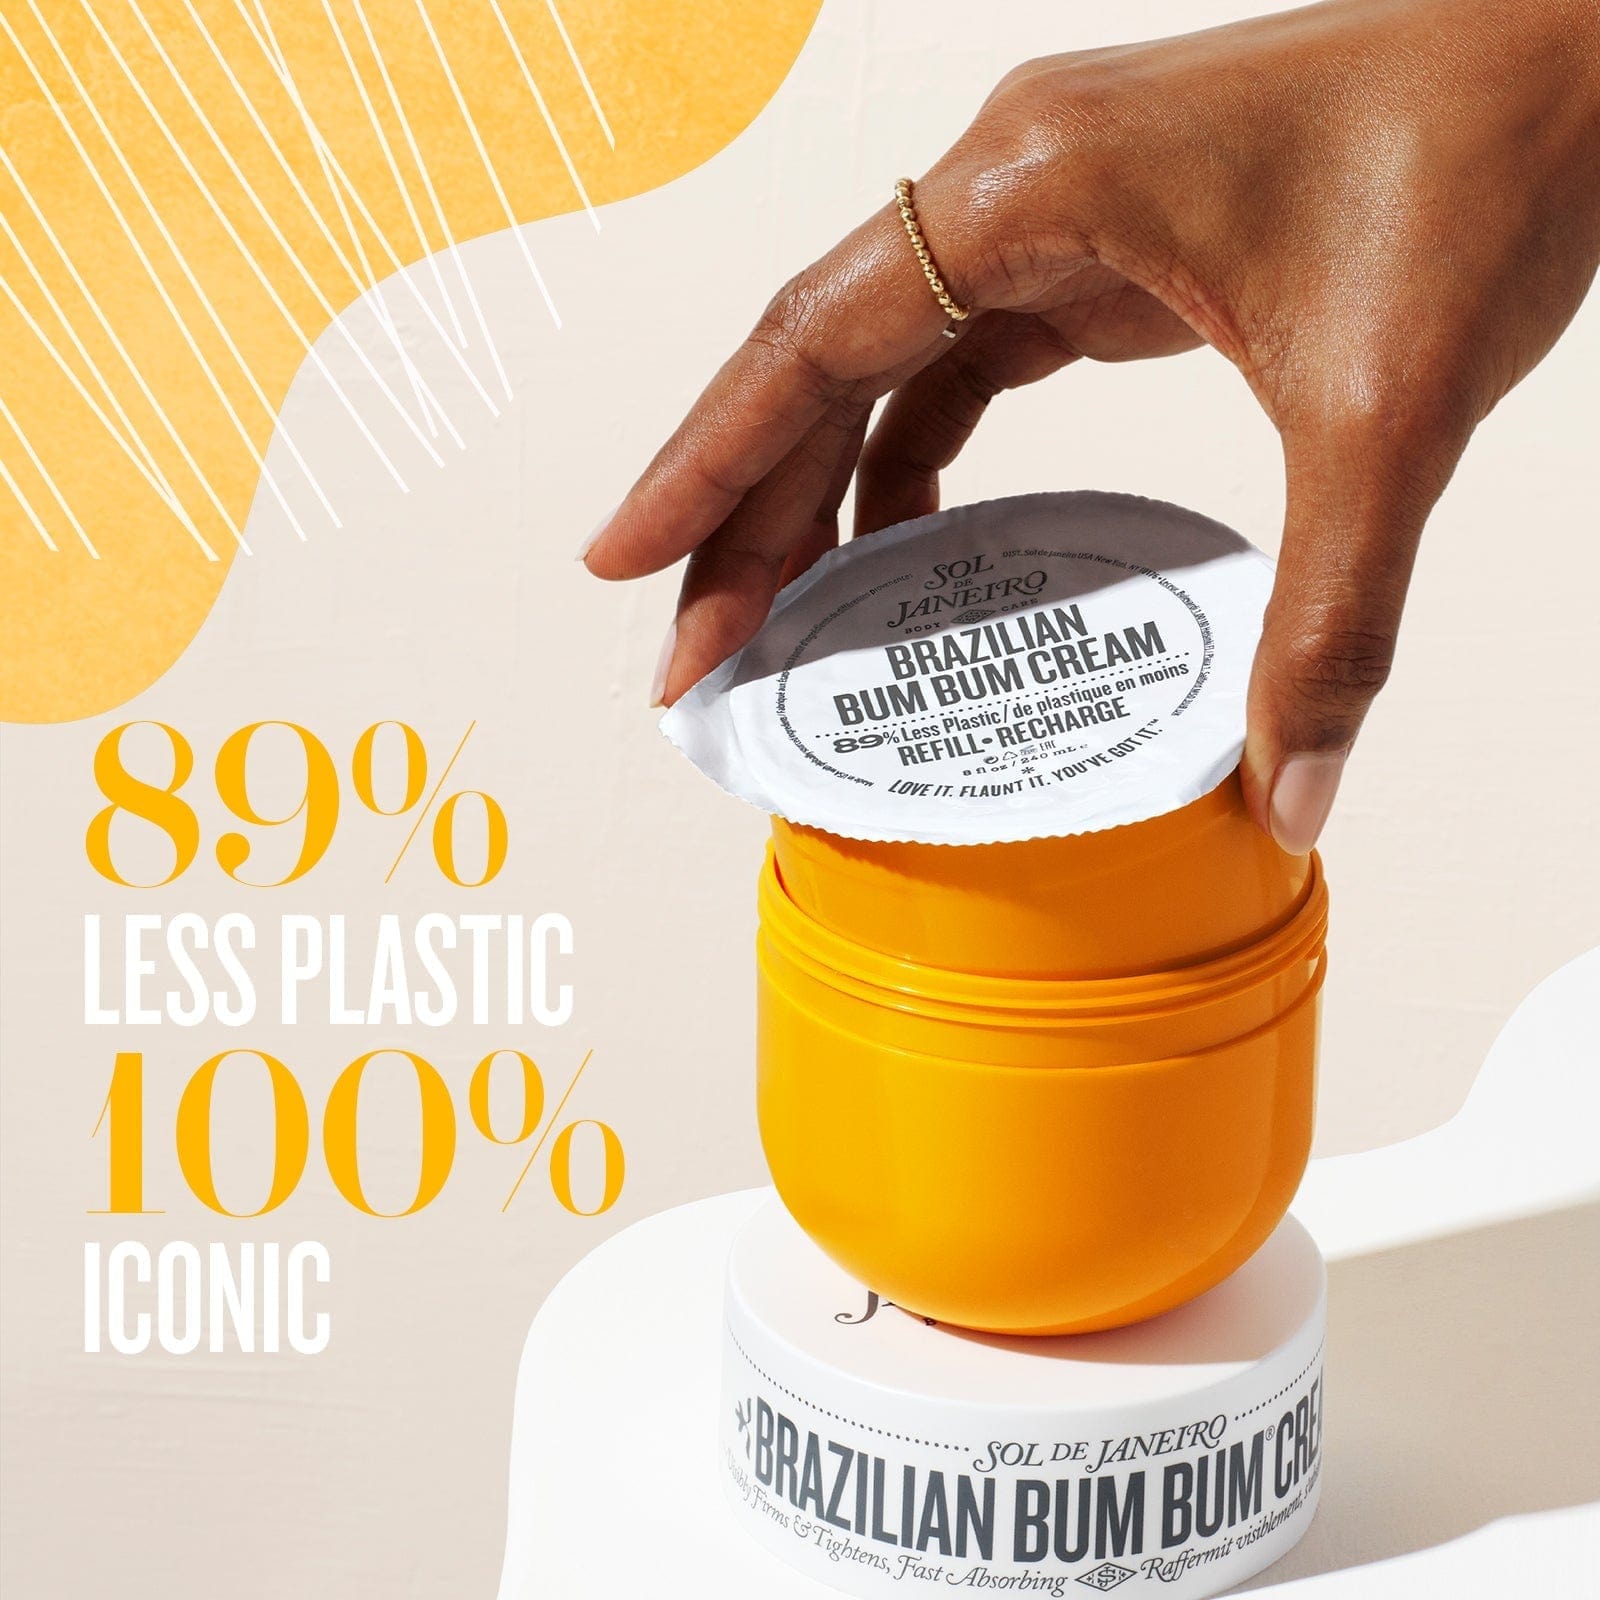 Bum Bum Cream Refill - 89% less plastic, 100% iconic